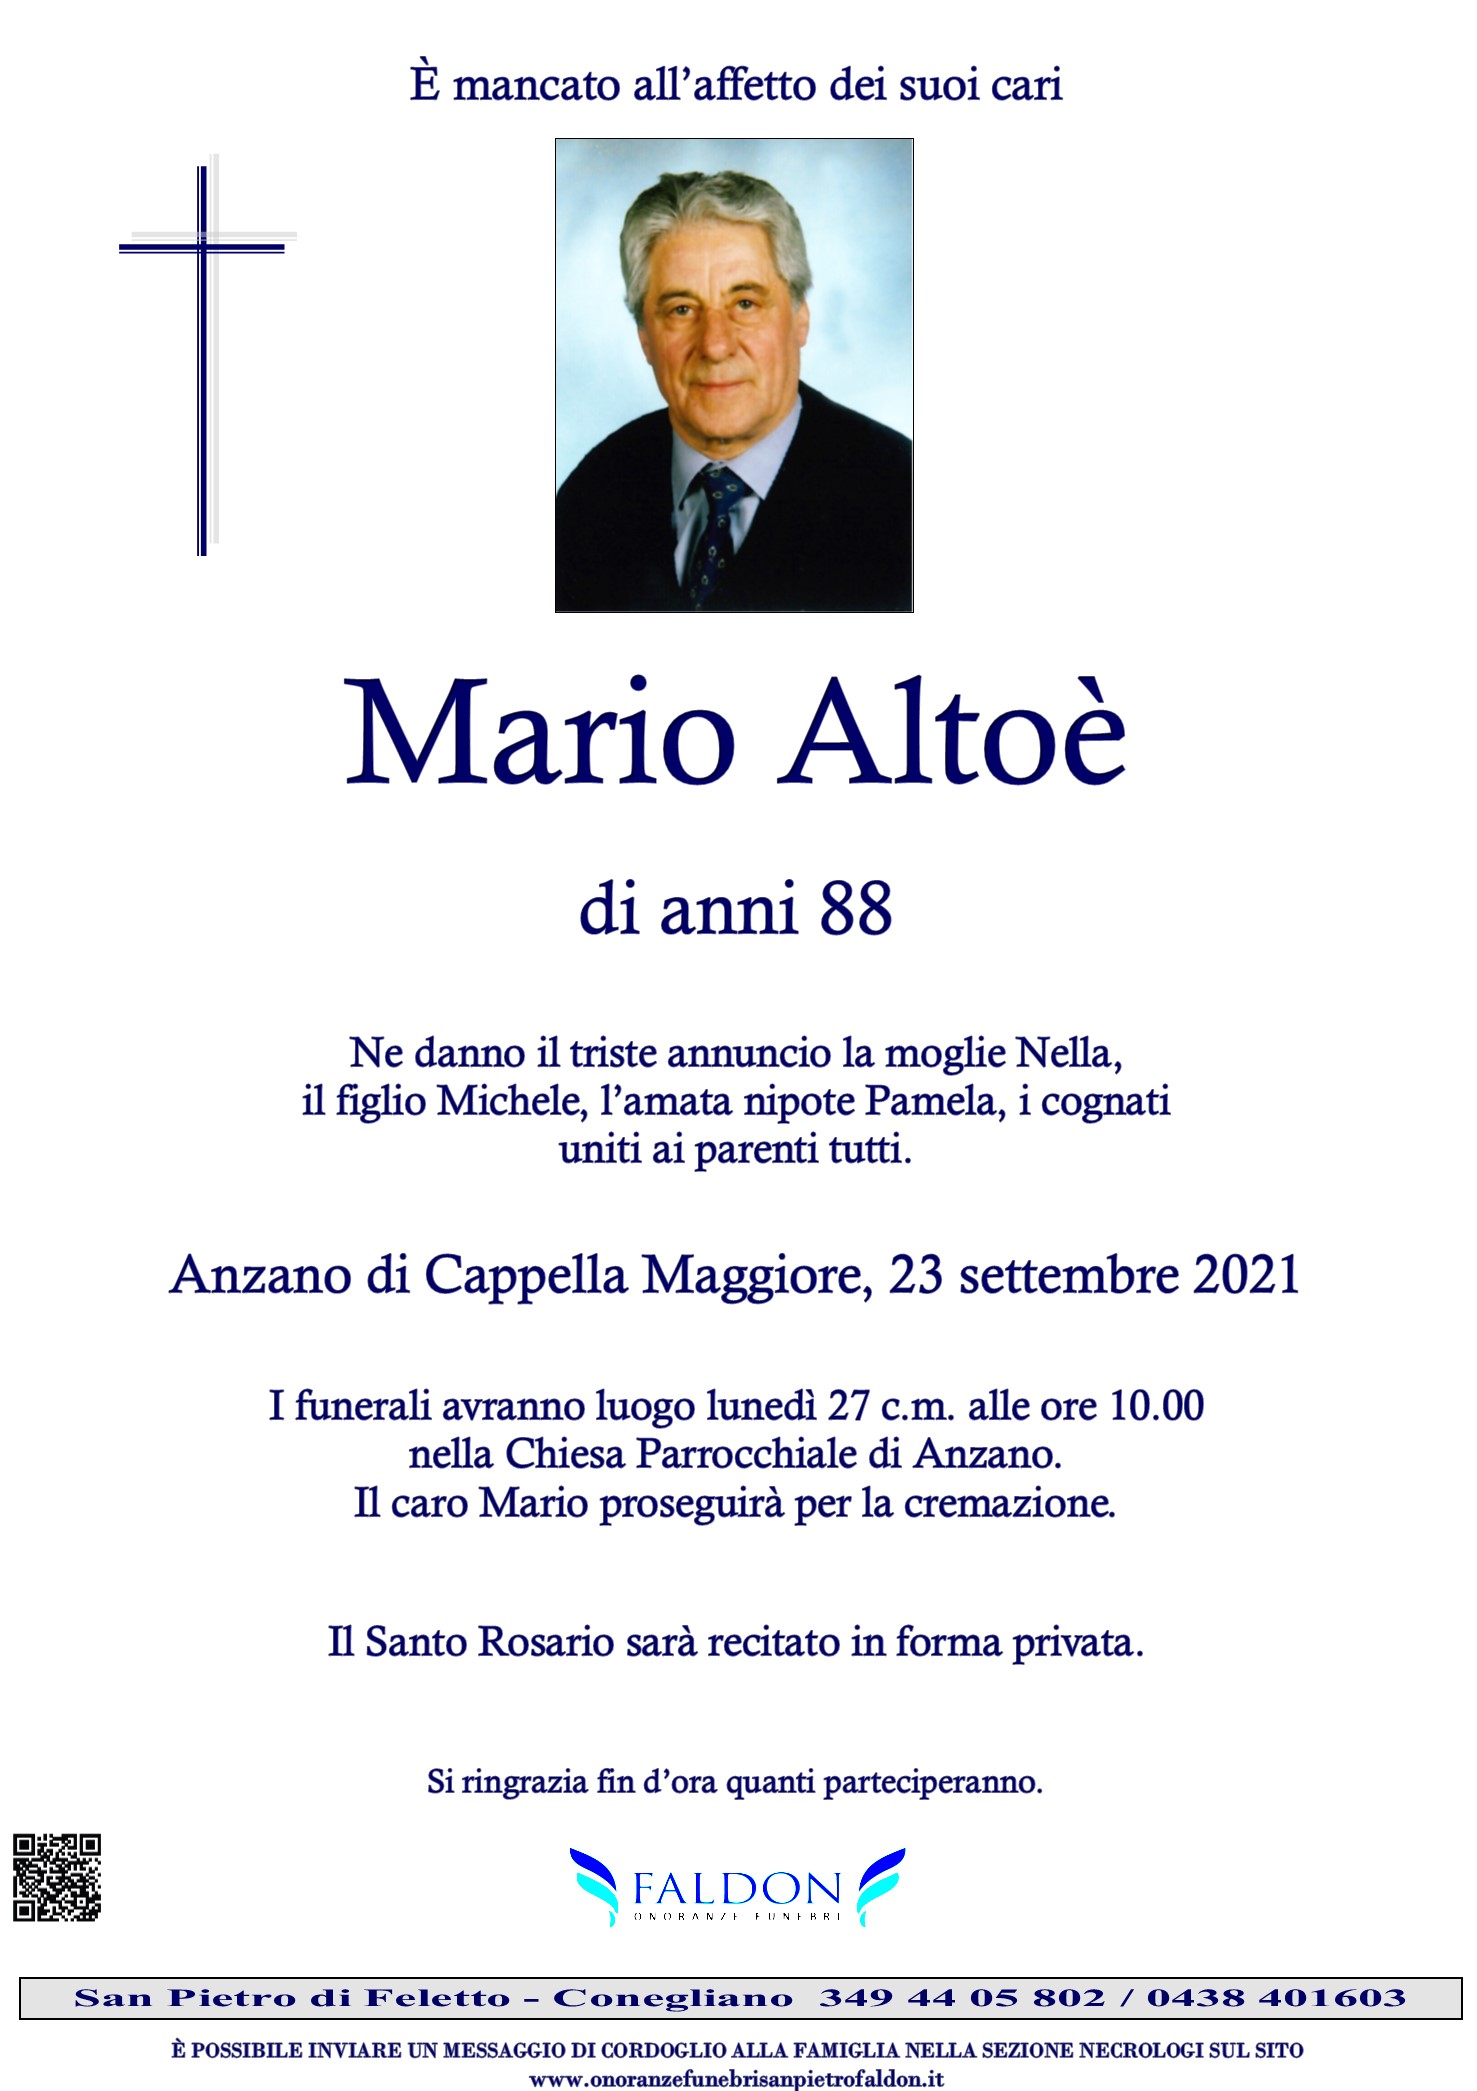 Mario Altoè